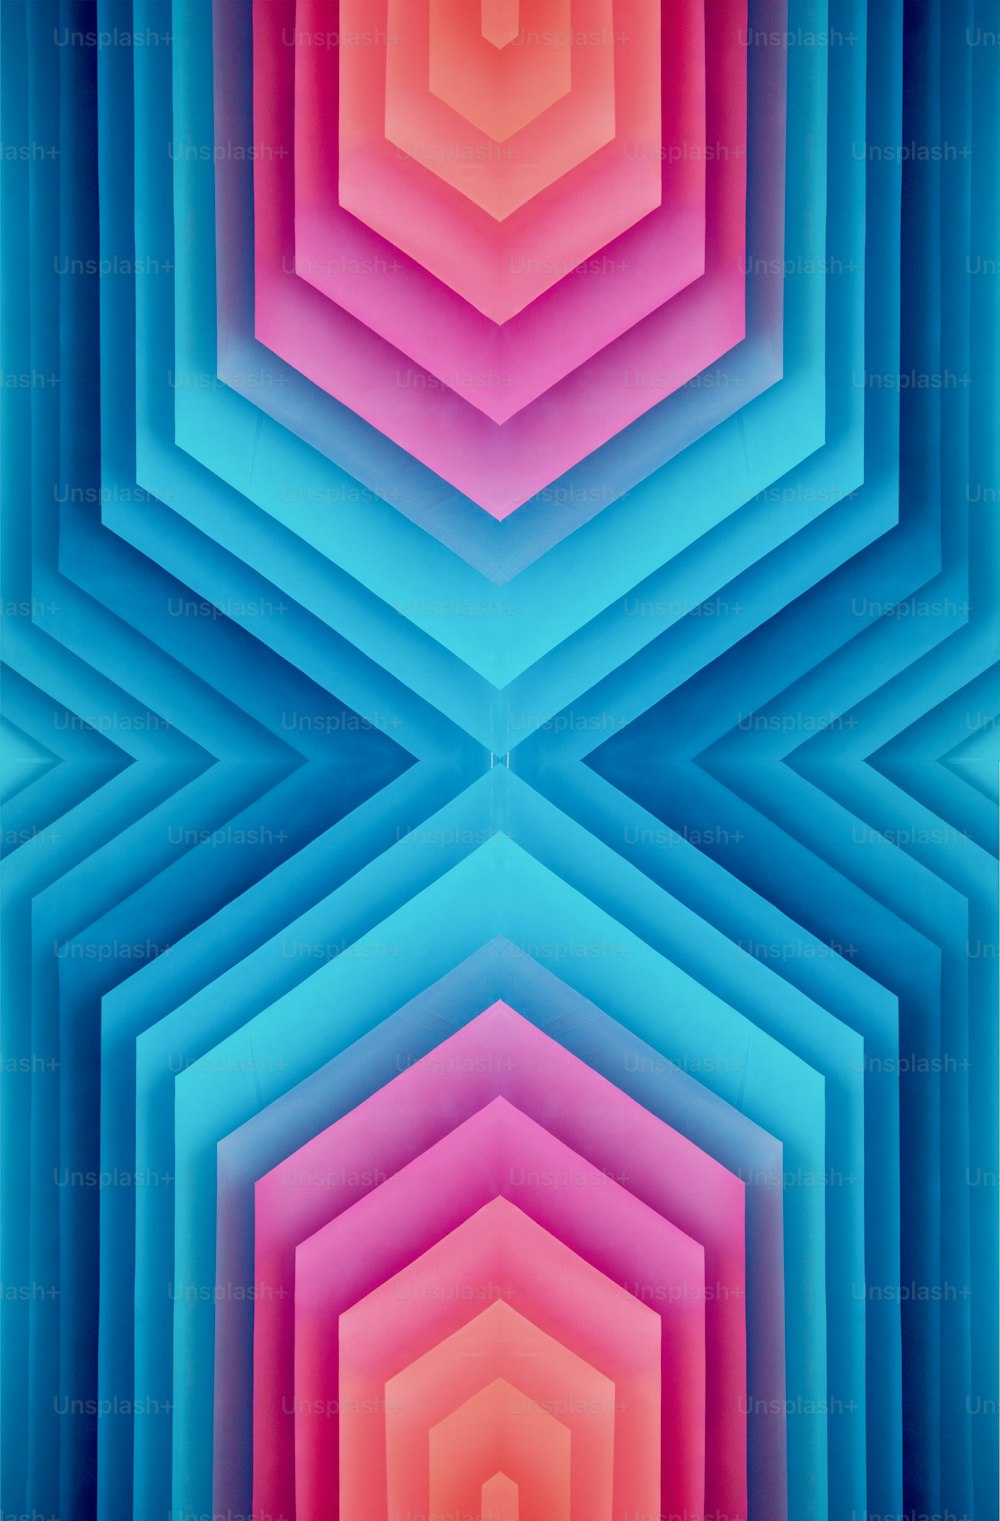 Un fond coloré avec un motif hexagonal